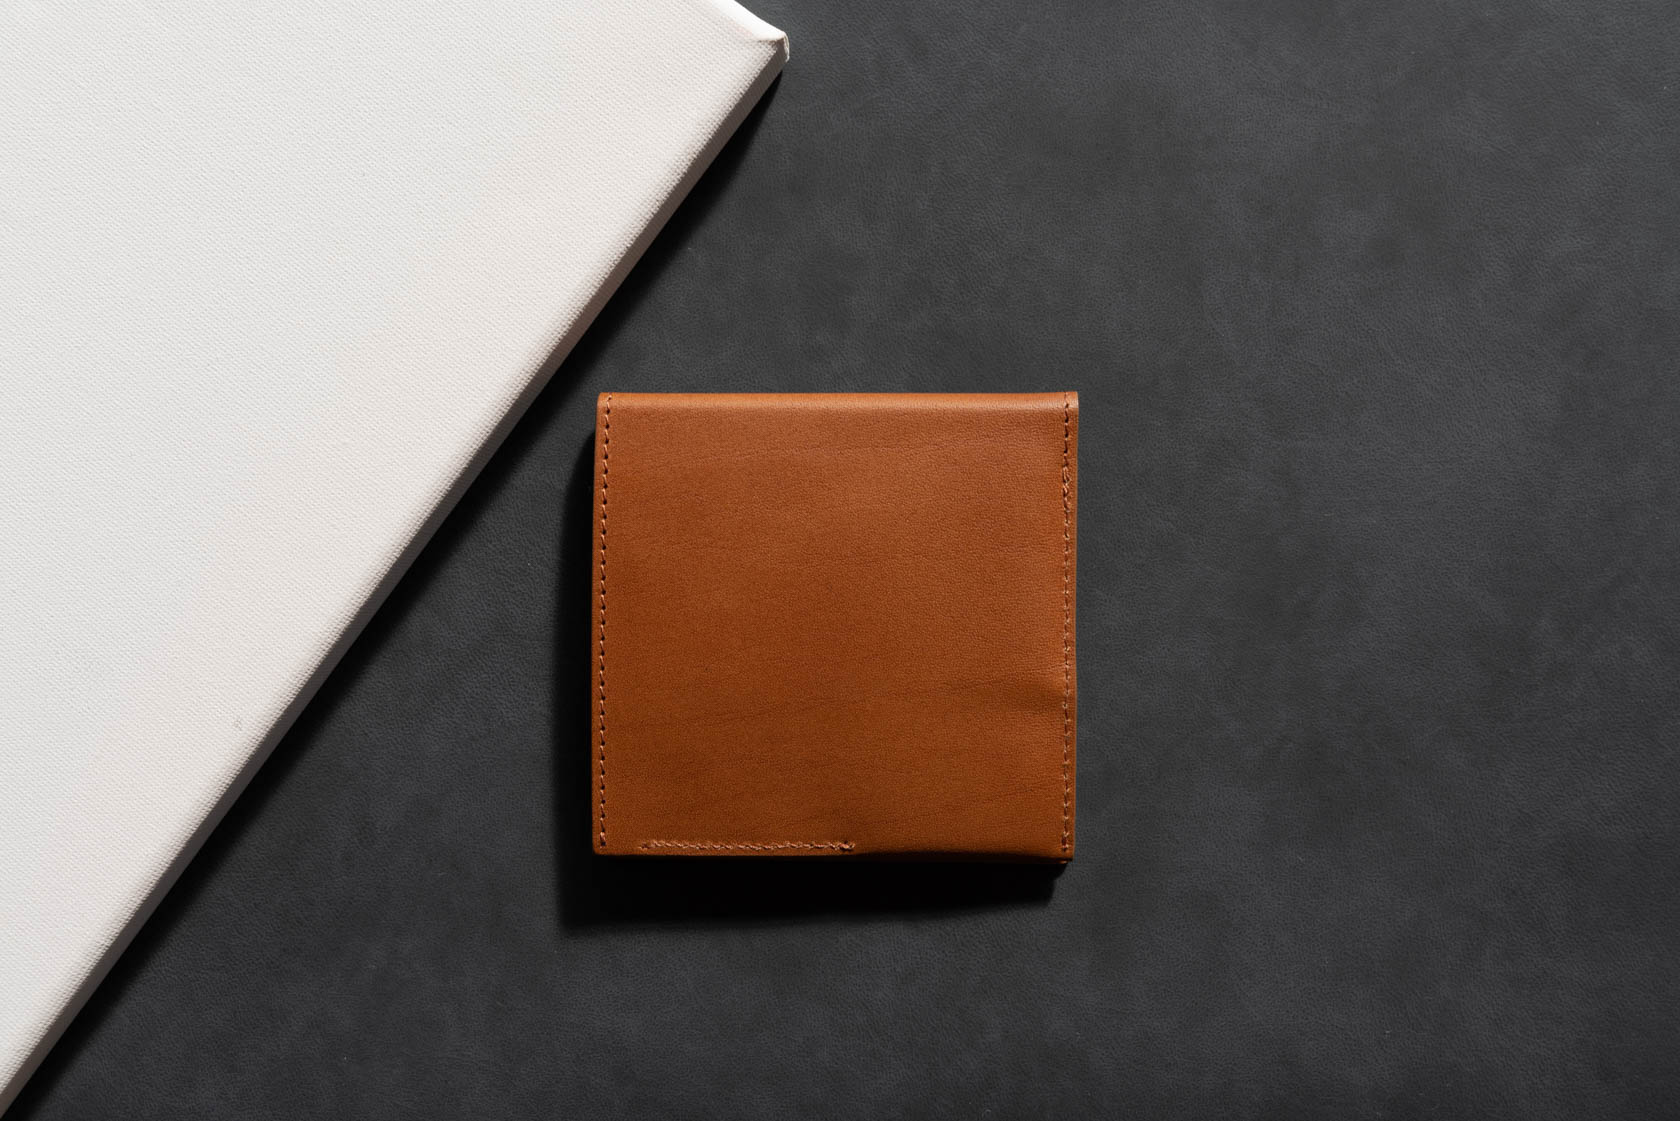 『キャッシュレス財布 abrAsus』レビュー。厚さ9mmでコンパクトなキャッシュレス時代にオススメの財布【PR】 | ガジェットタッチ